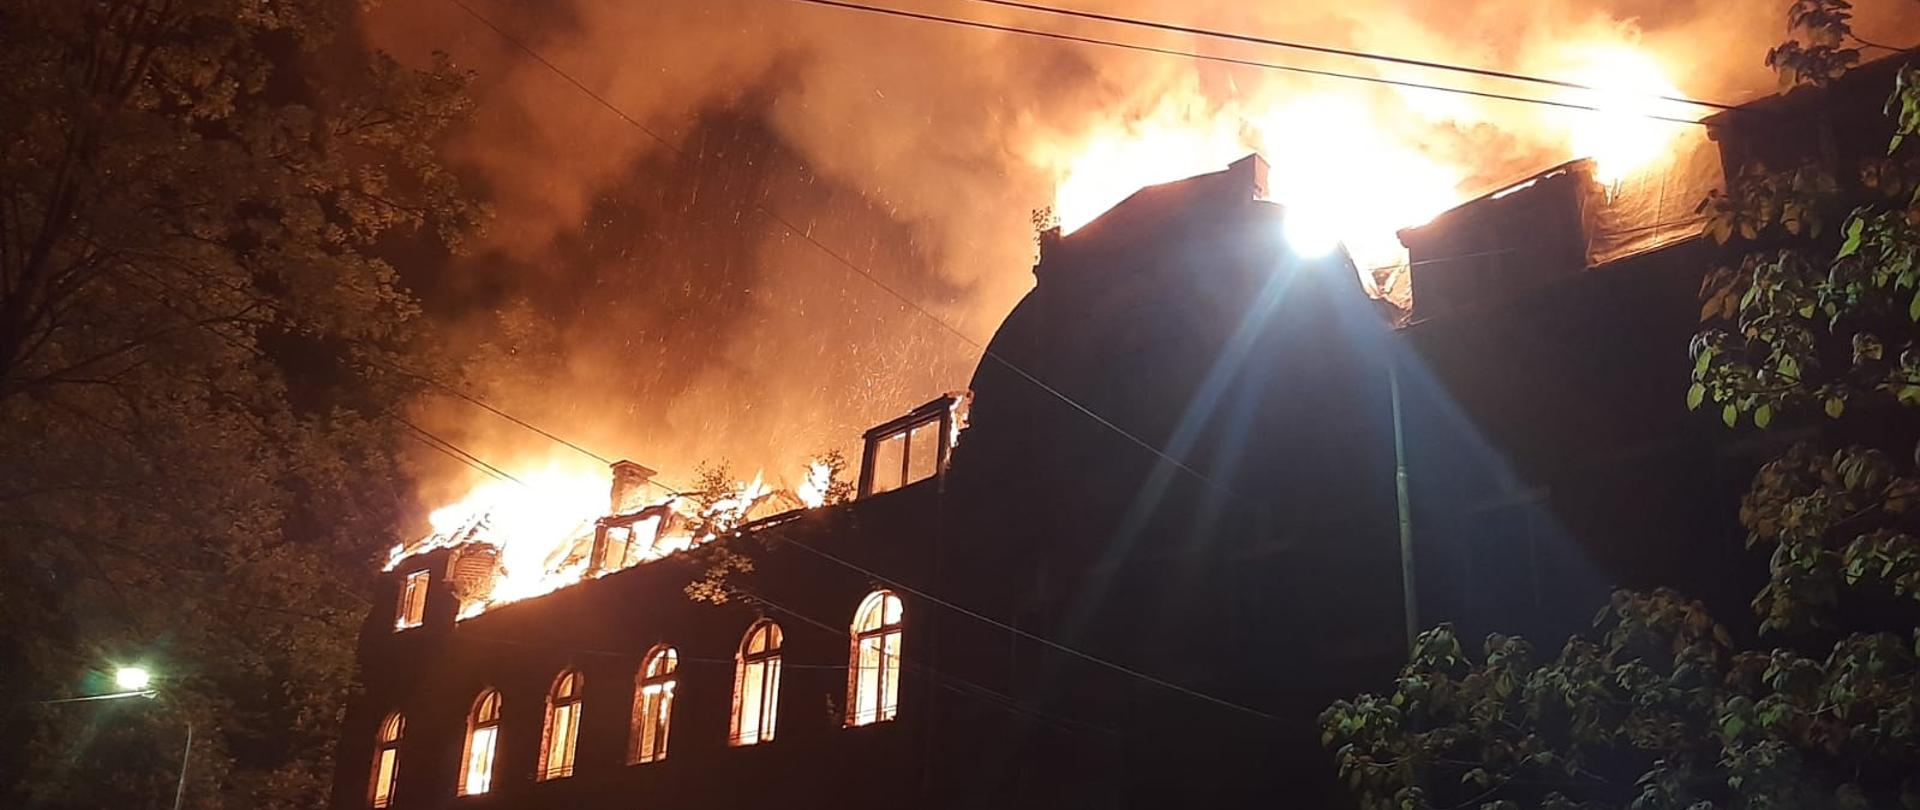 Na zdjęciu widoczny rozwinięty pożar dachu dwupiętrowego budynku